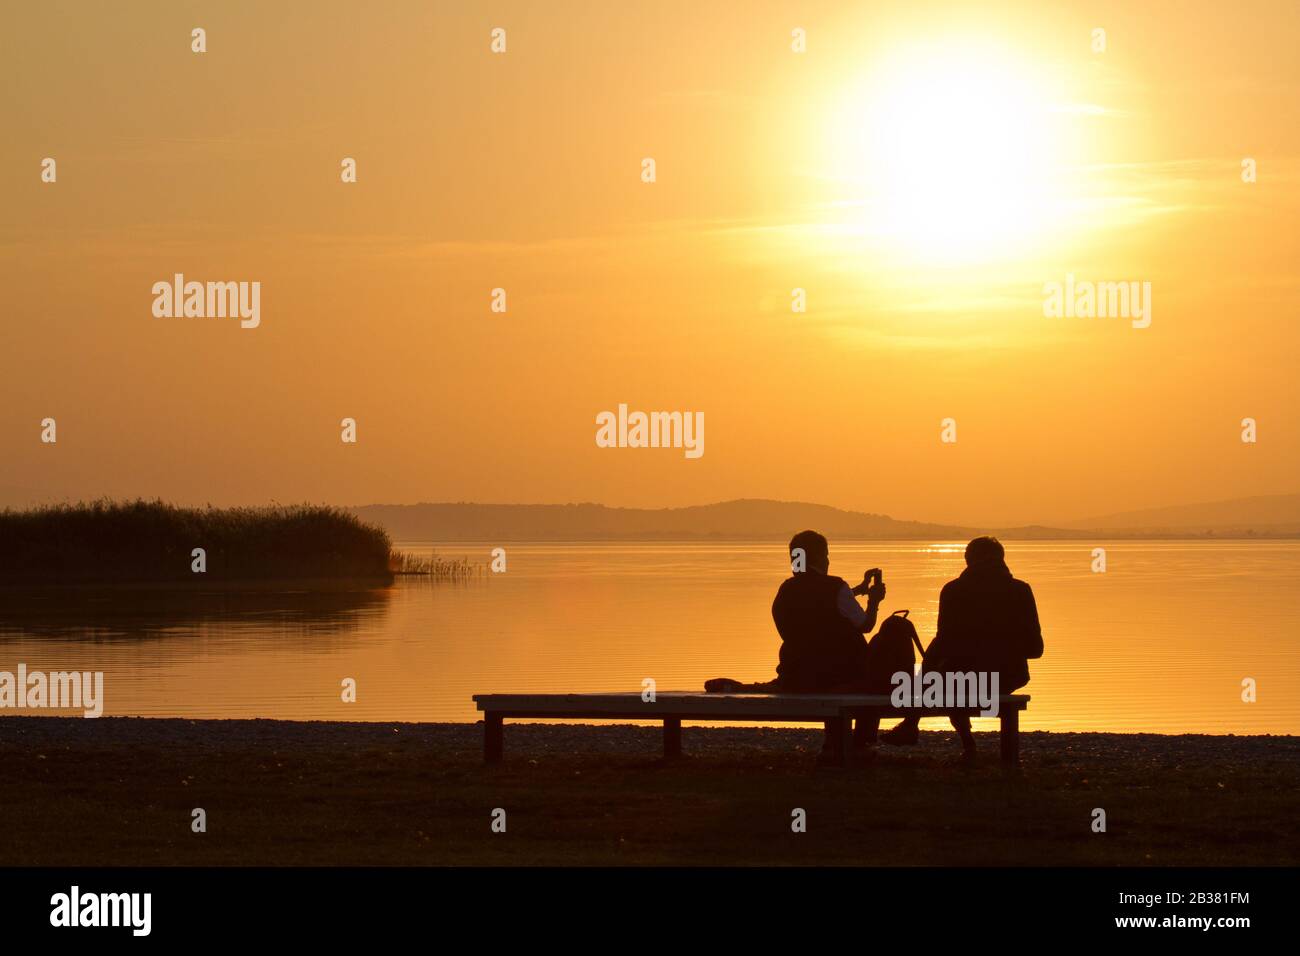 Abendstimmung am Neusiedler See, Paar auf Parkbank schaut auf den See, Silhouette, Stock Photo